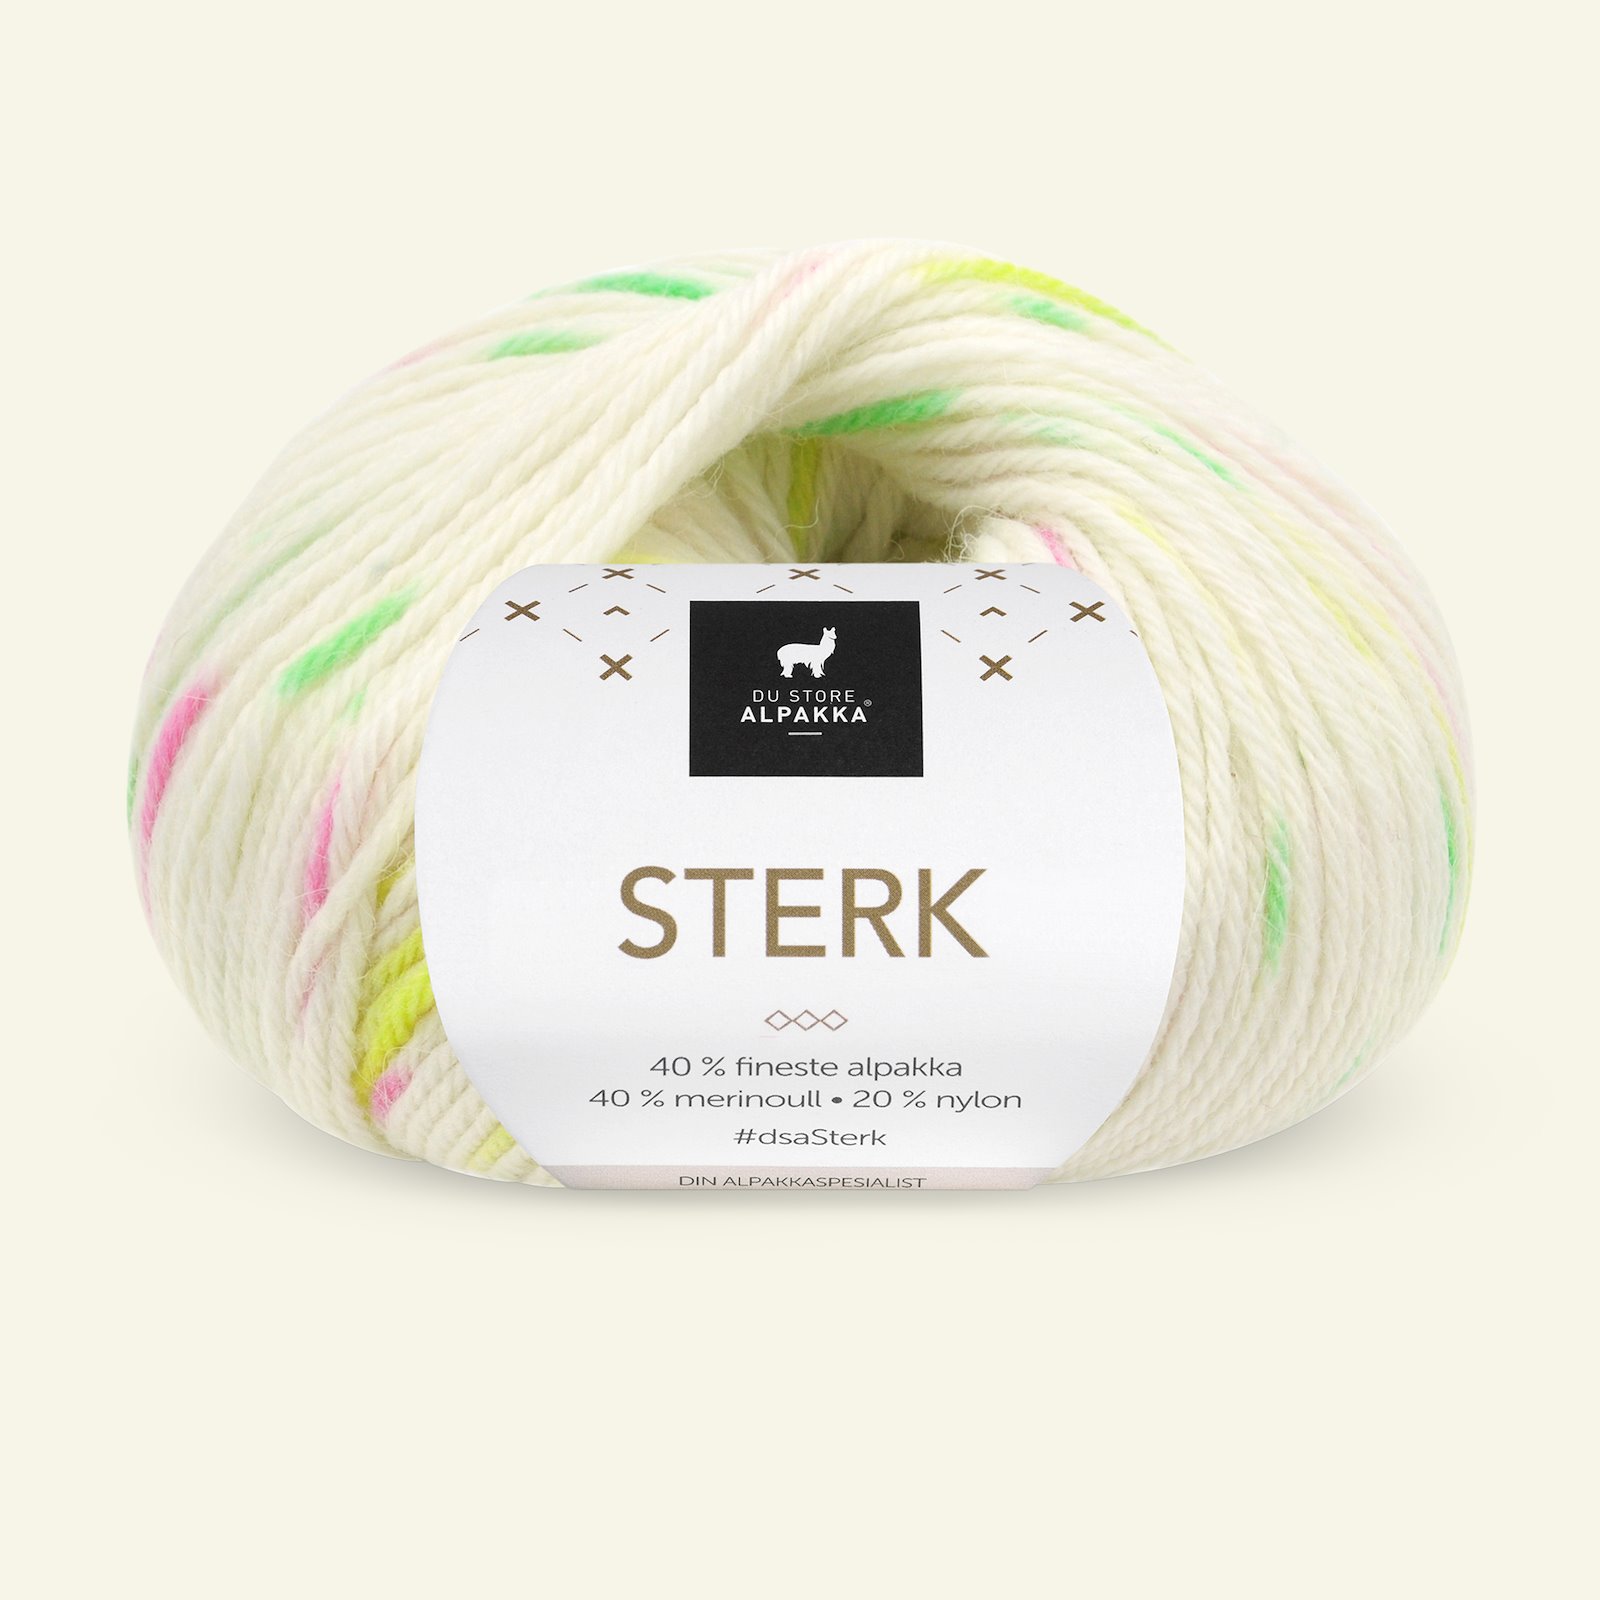 Du Store Alpakka Sterk hvid/neon print 90001239_pack